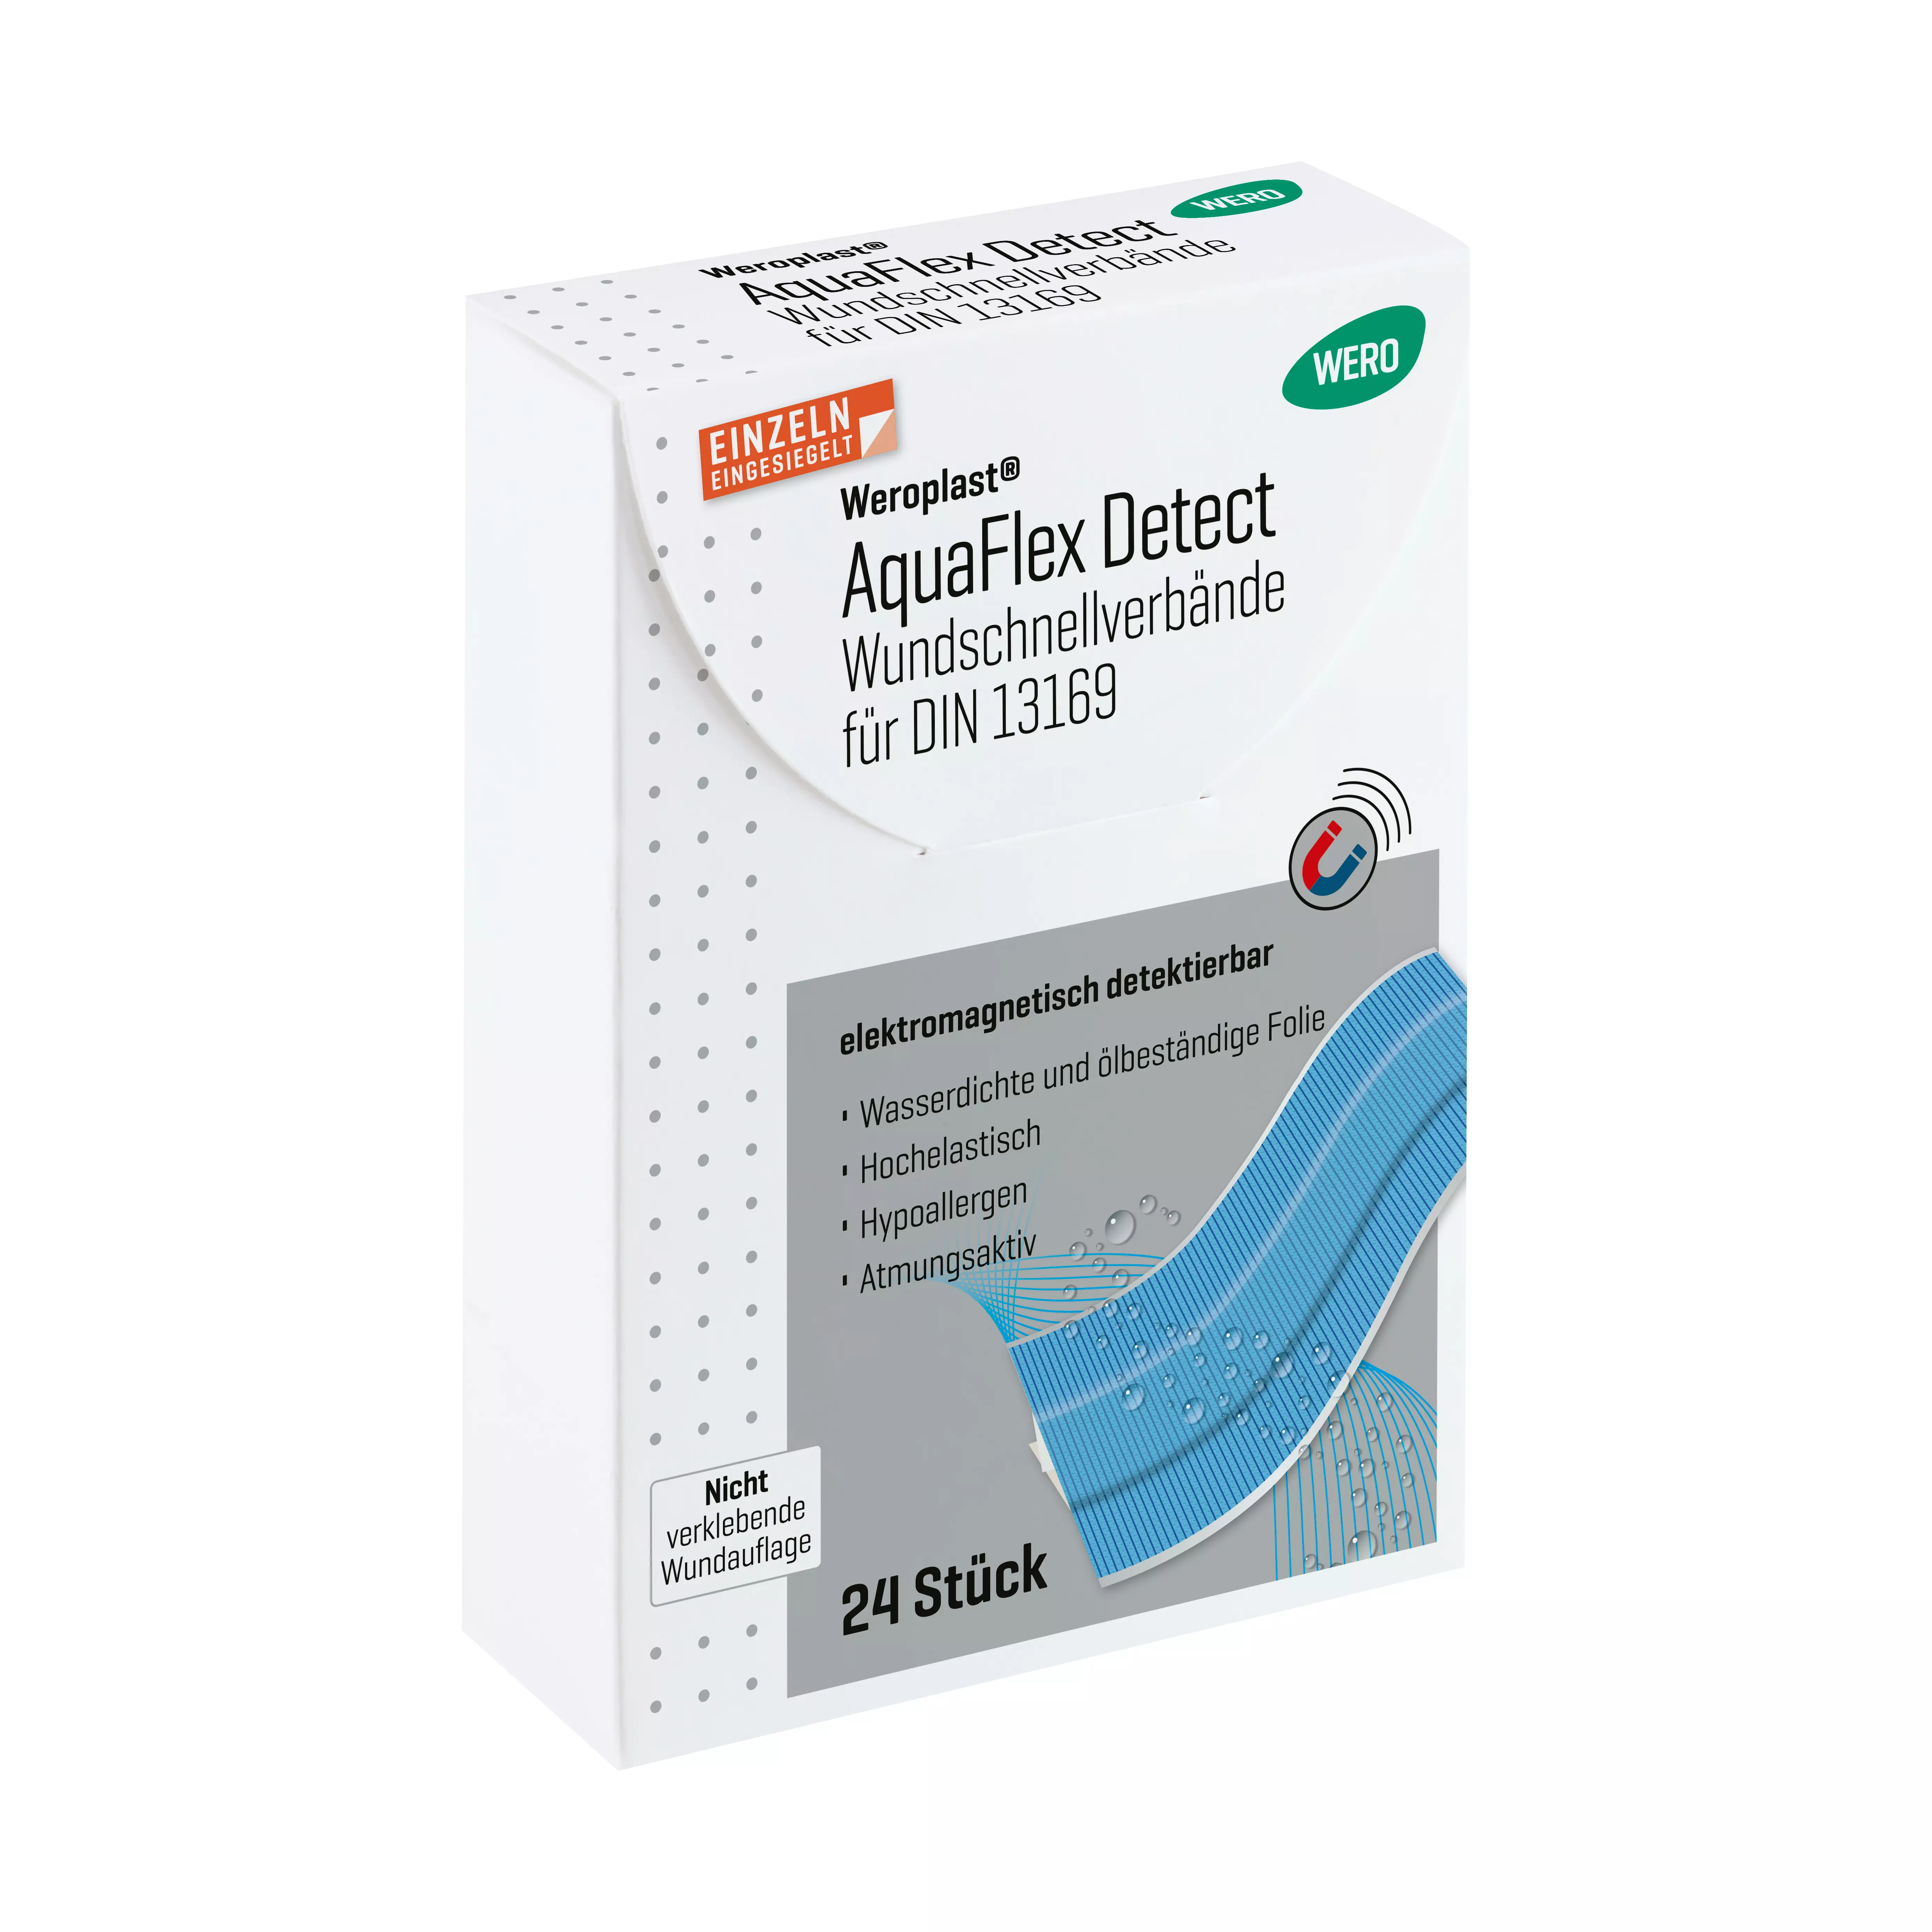 Weroplast® AquaFlex Detect Pflaster - Wundschnellverbände DIN 13169